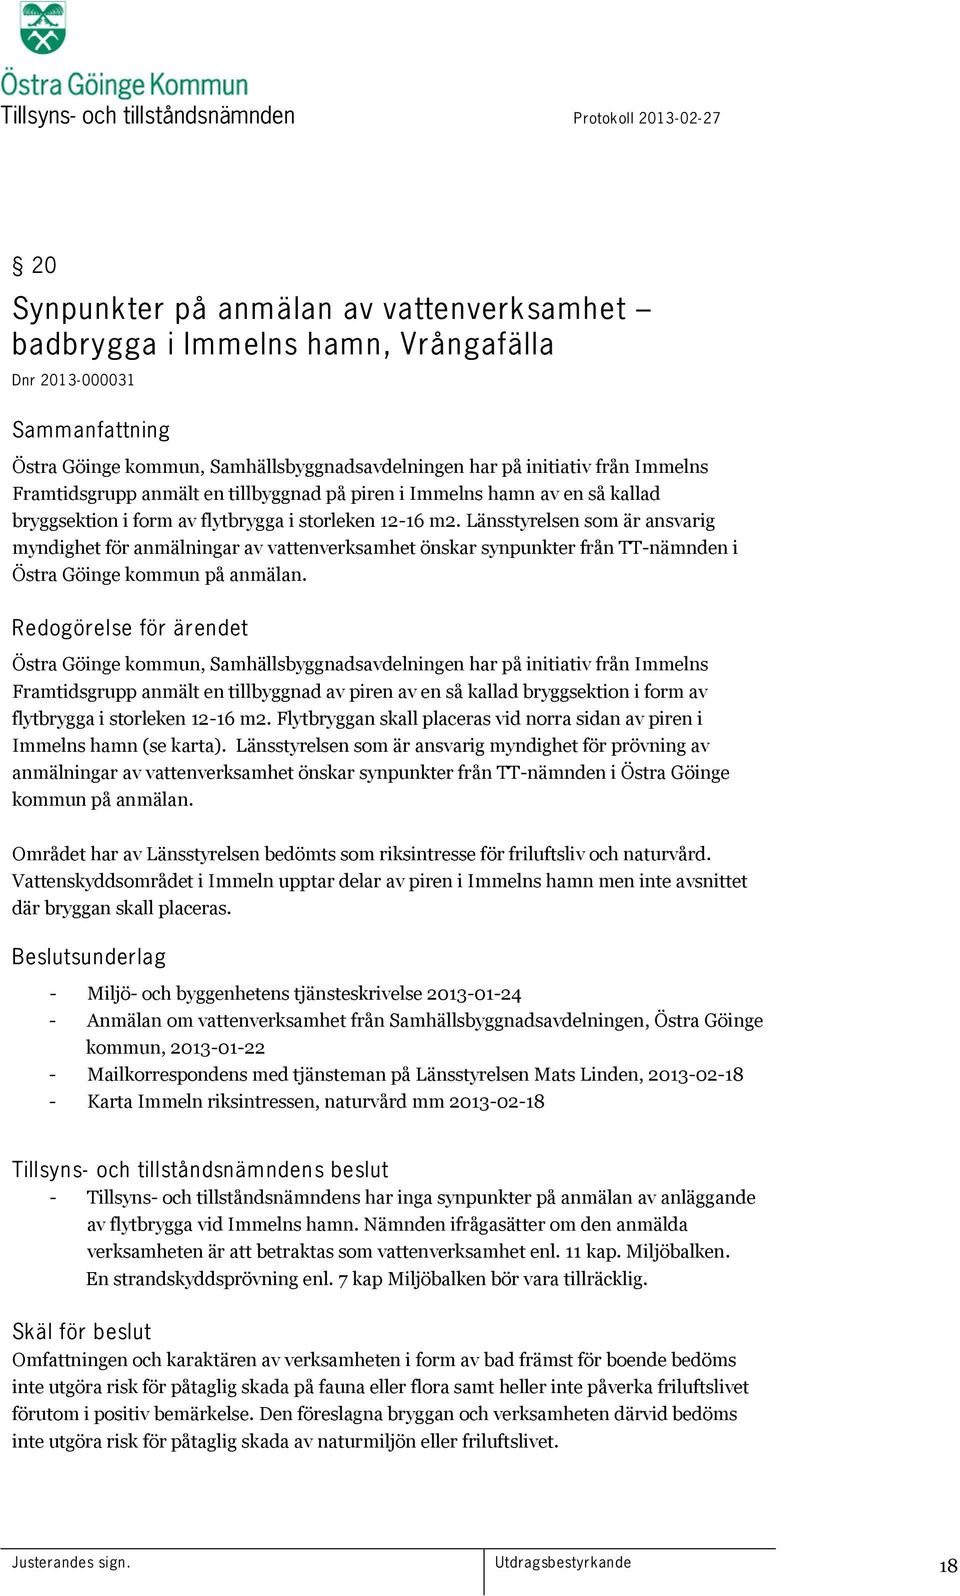 Länsstyrelsen som är ansvarig myndighet för anmälningar av vattenverksamhet önskar synpunkter från TT-nämnden i Östra Göinge kommun på anmälan.